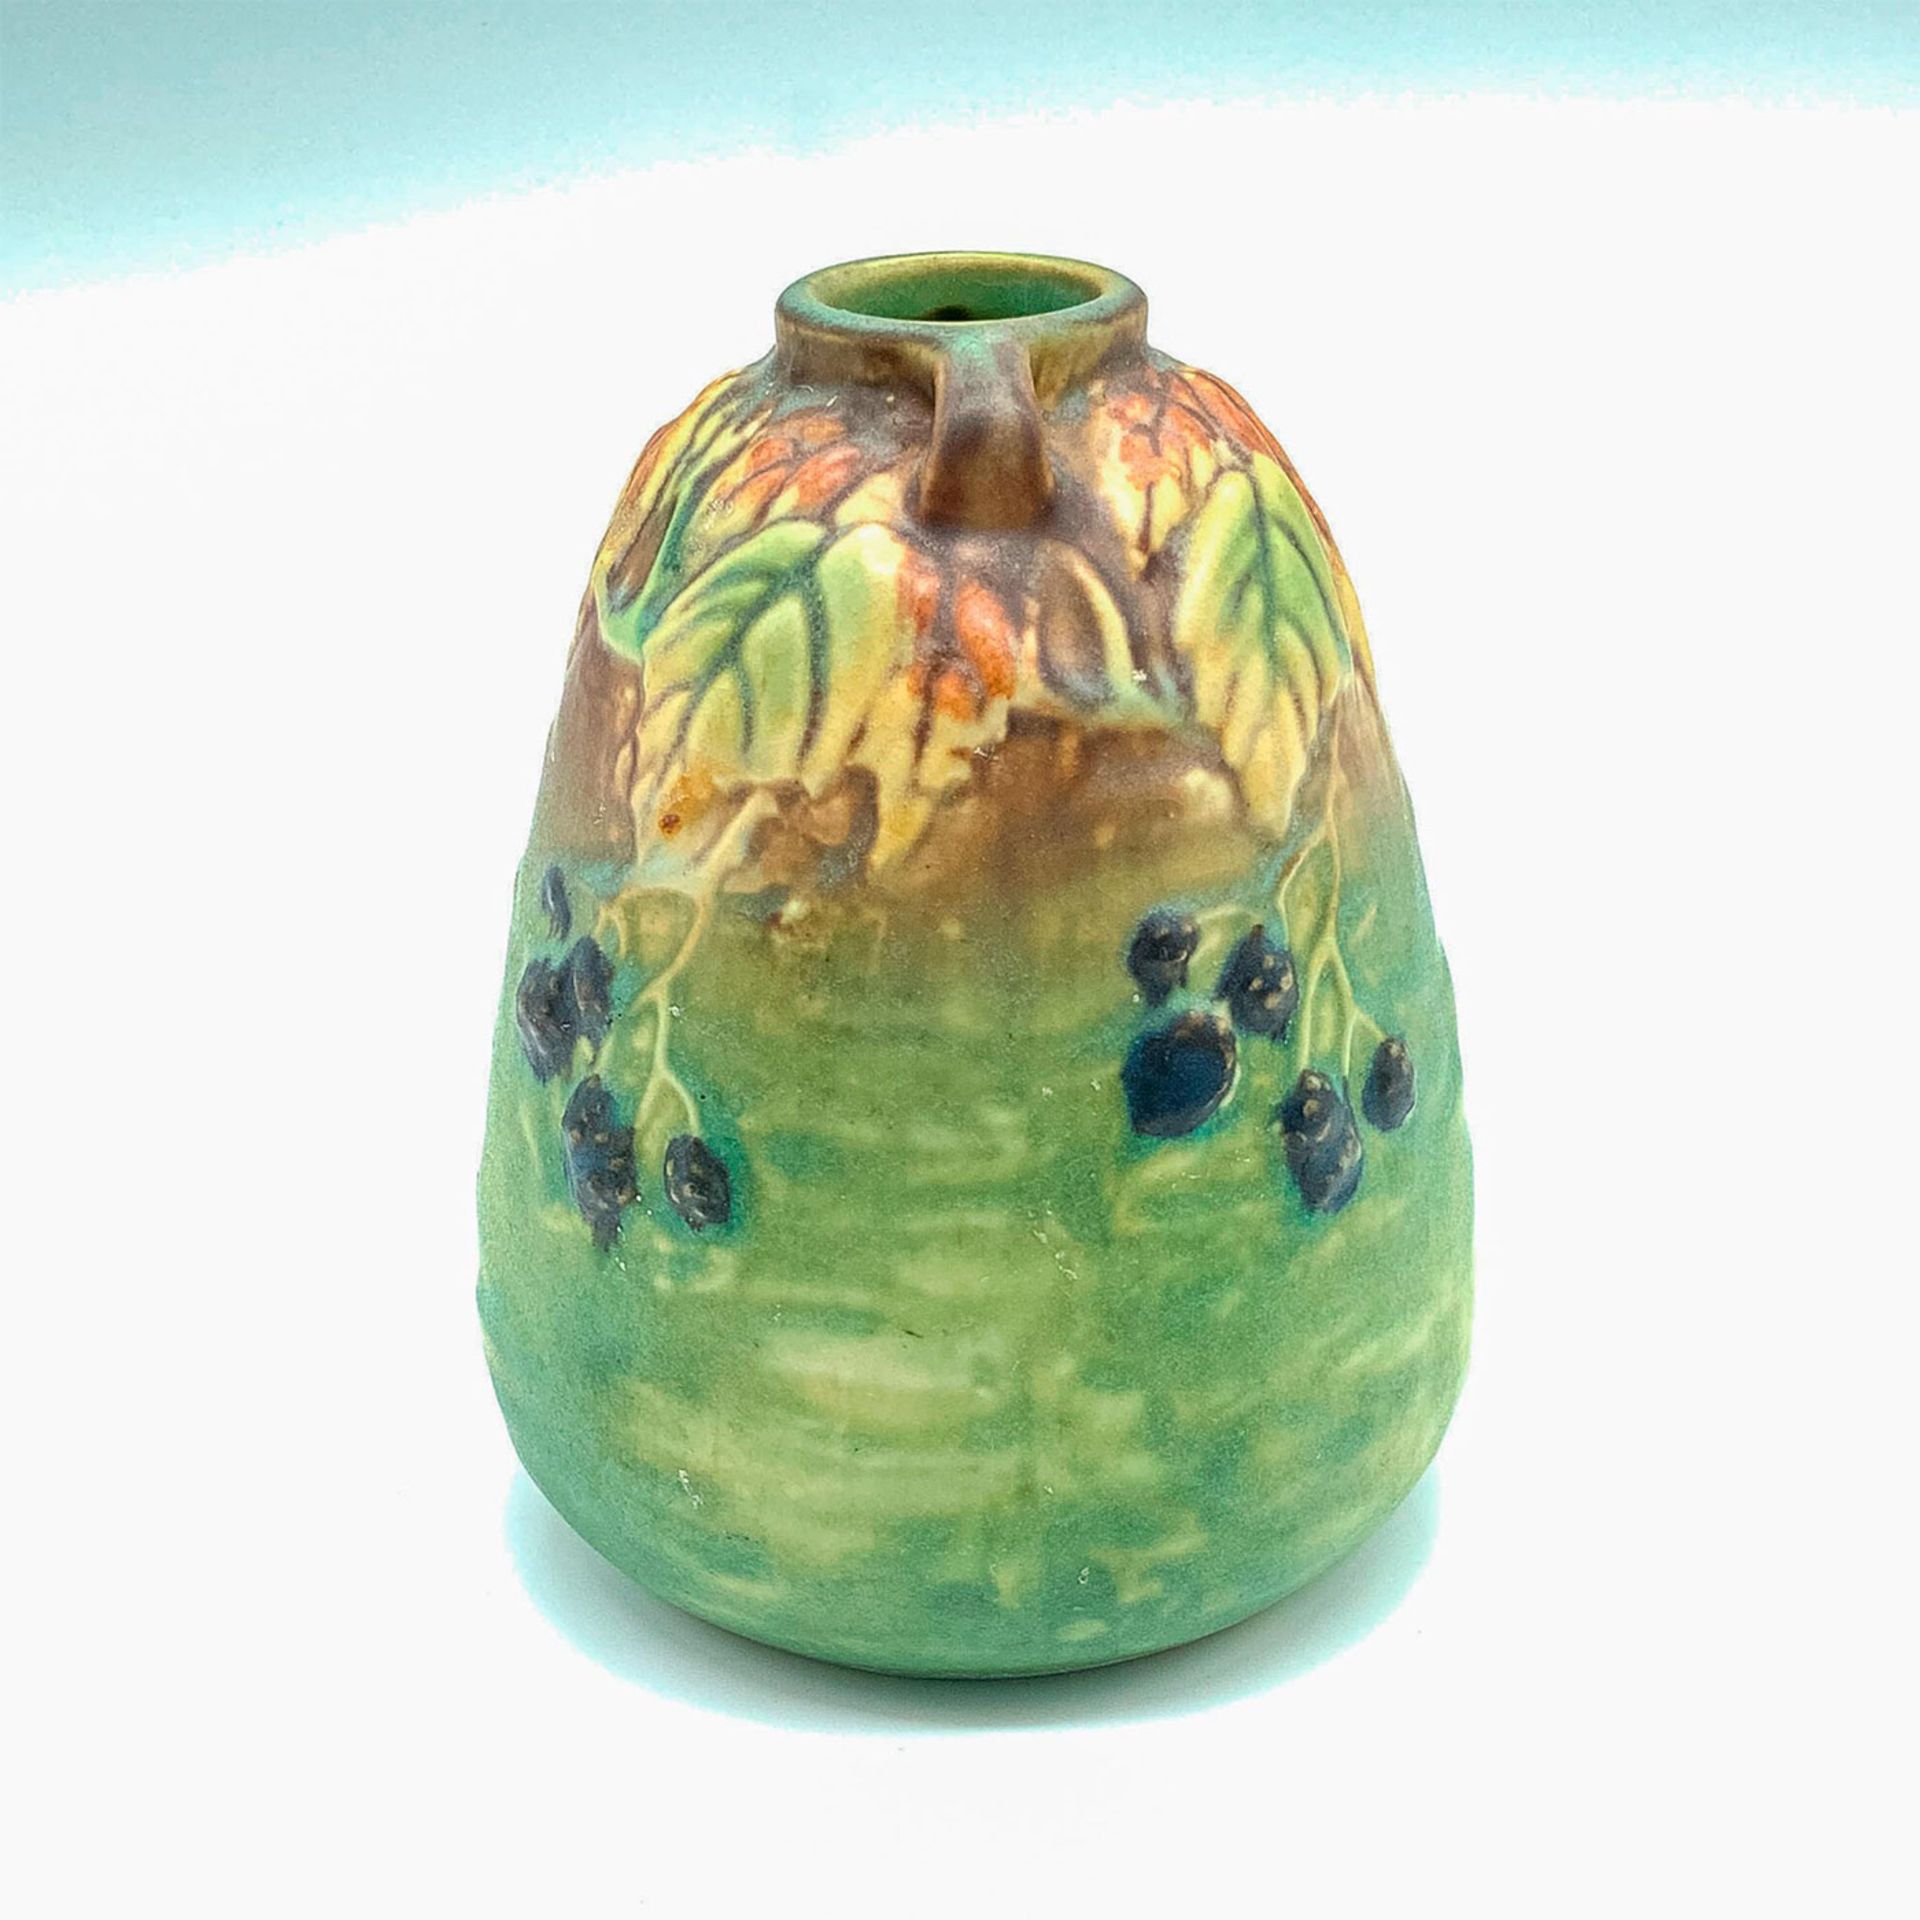 Roseville Pottery Vase, Blackberry - Image 2 of 3